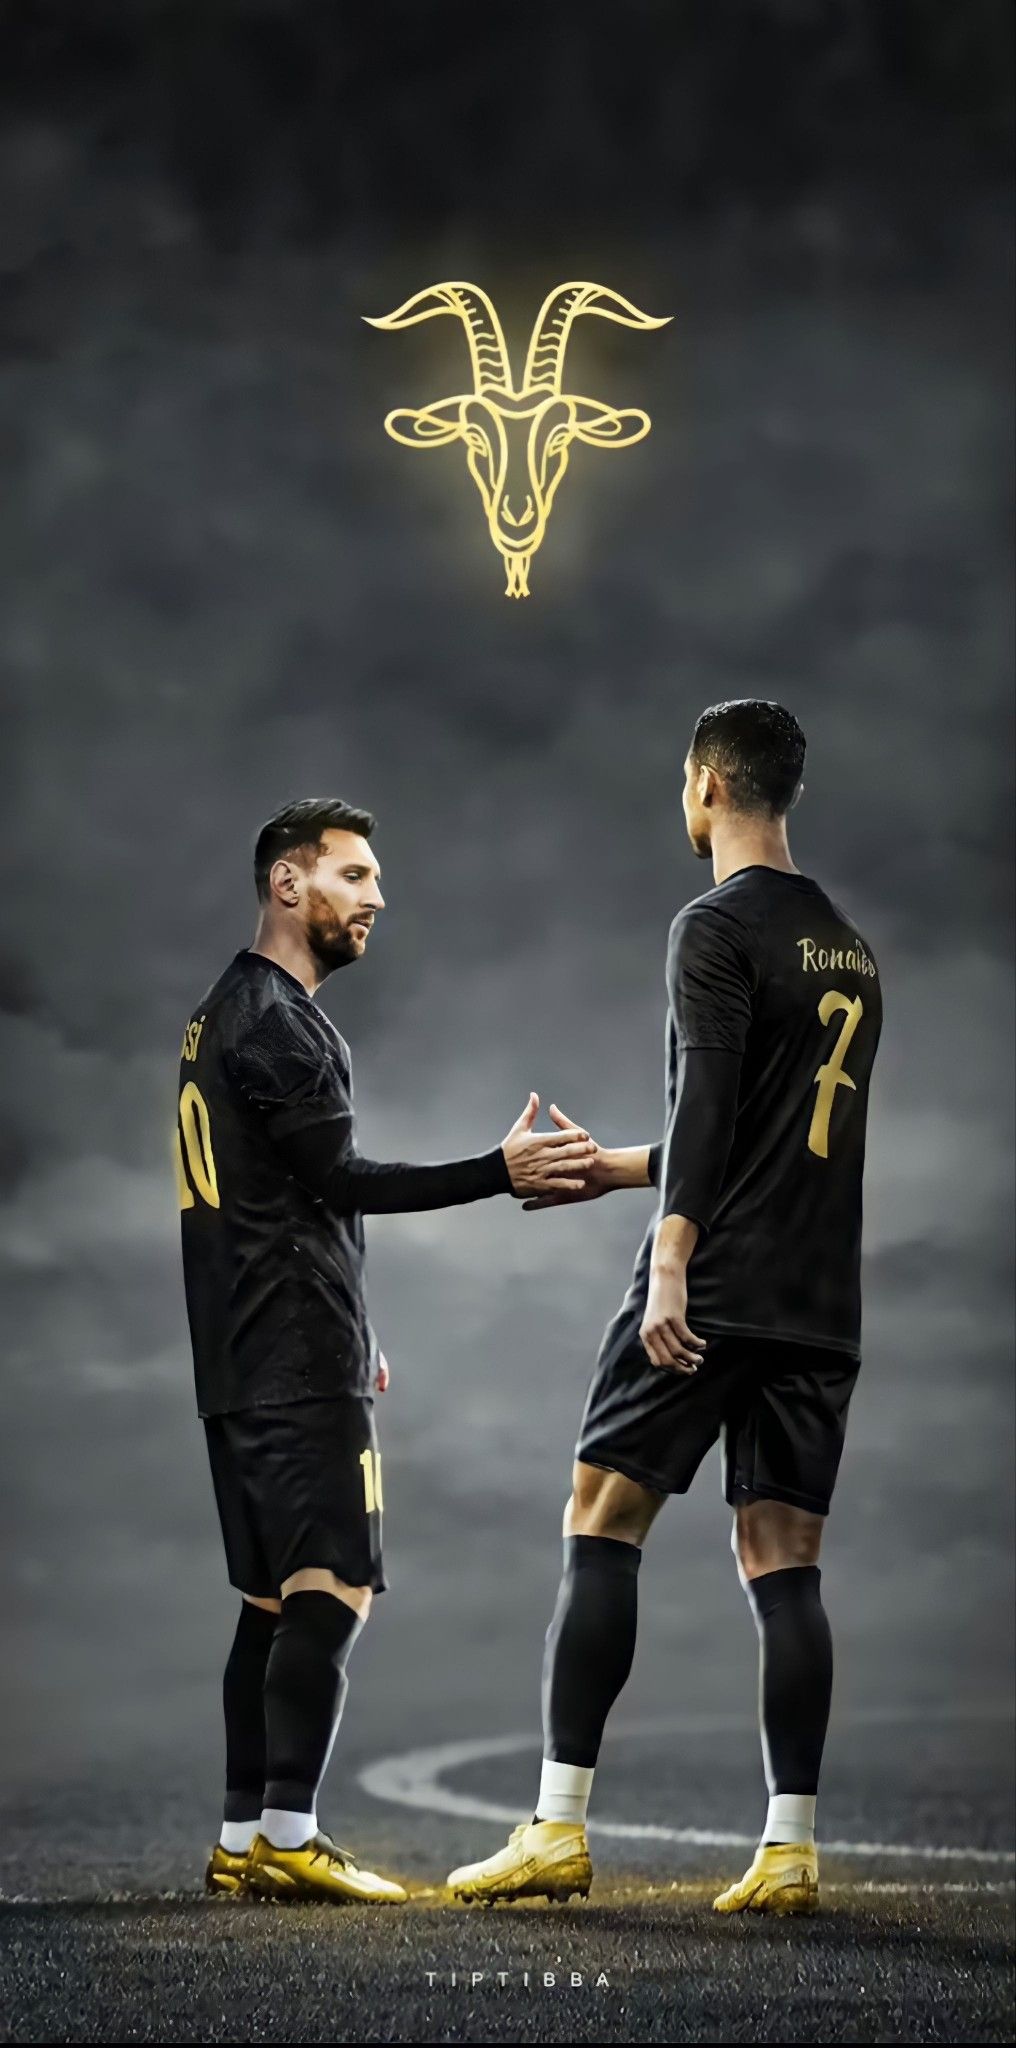 Cristiano Ronaldo and Messi